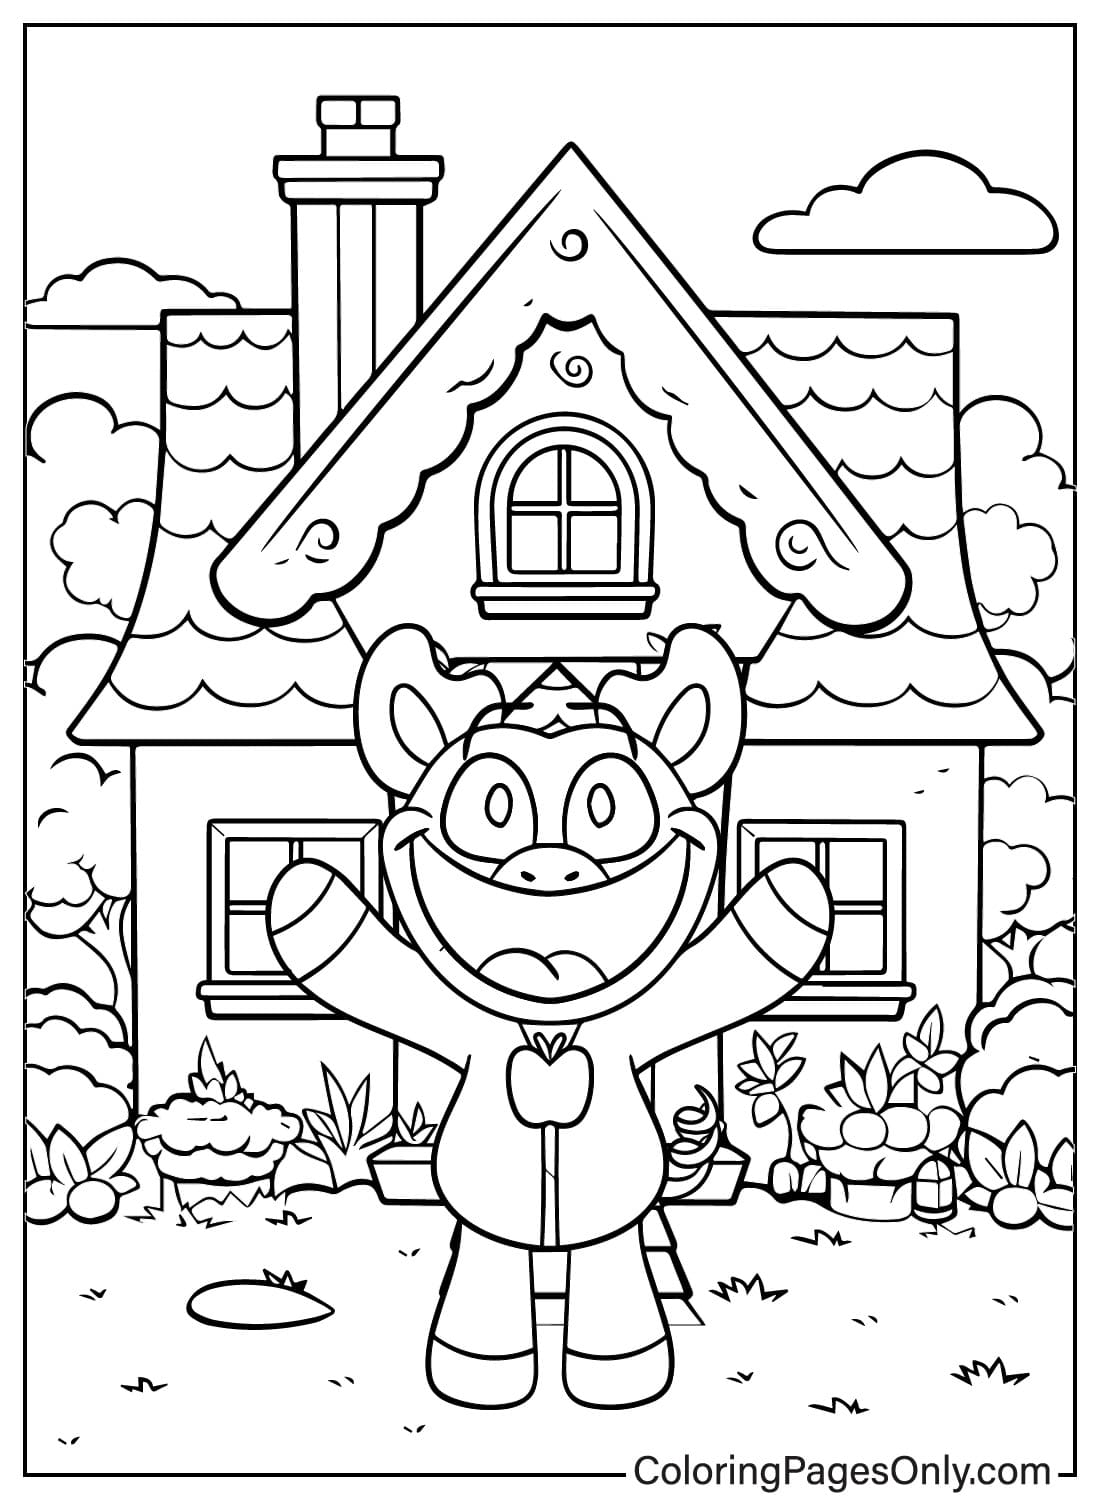 Página para colorir de PickyPiggy e House de PickyPiggy